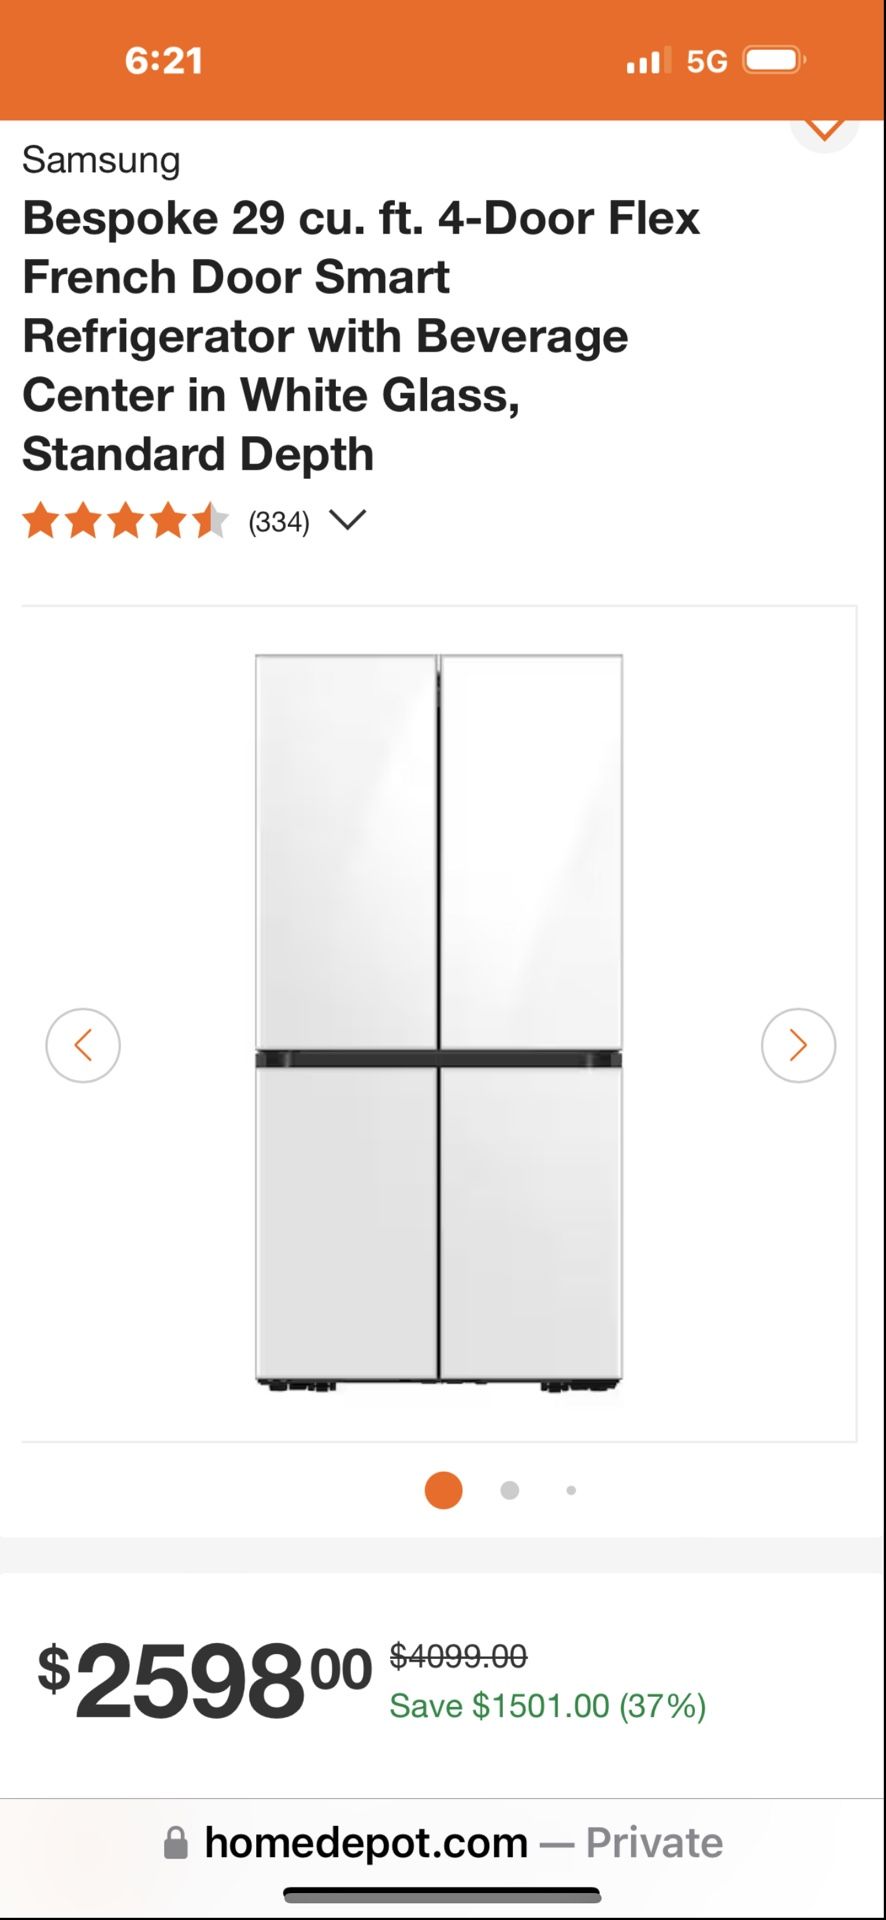 Samsung Bespoke 29 cu. ft. 4-Door Flex French Door Smart Refrigerator